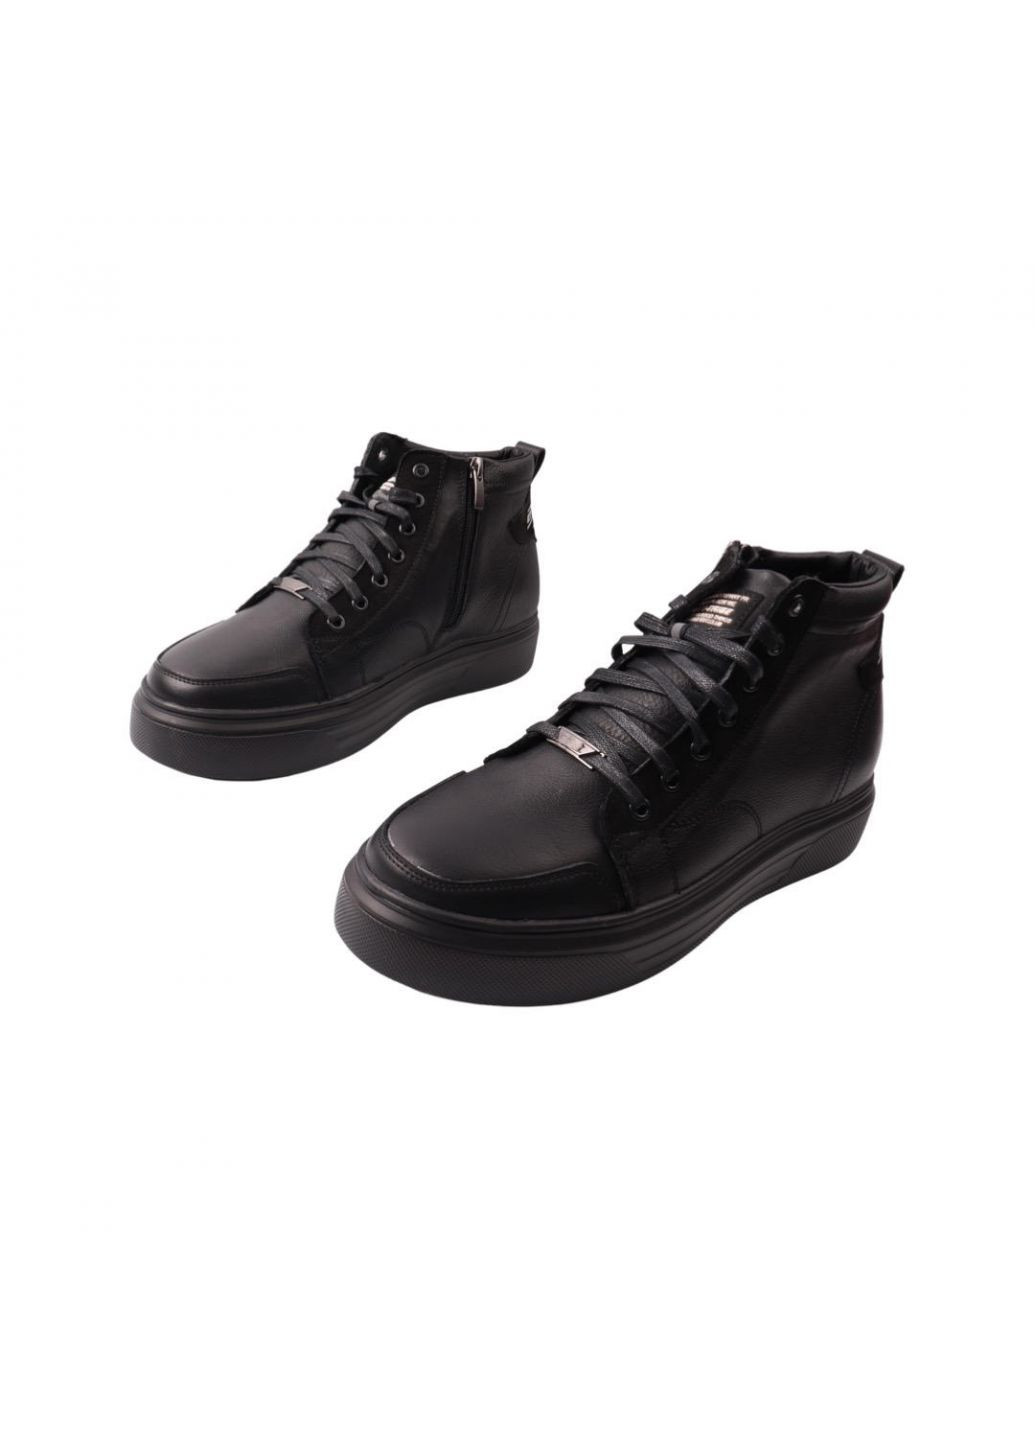 Черные ботинки мужские черные натуральная кожа Extrem